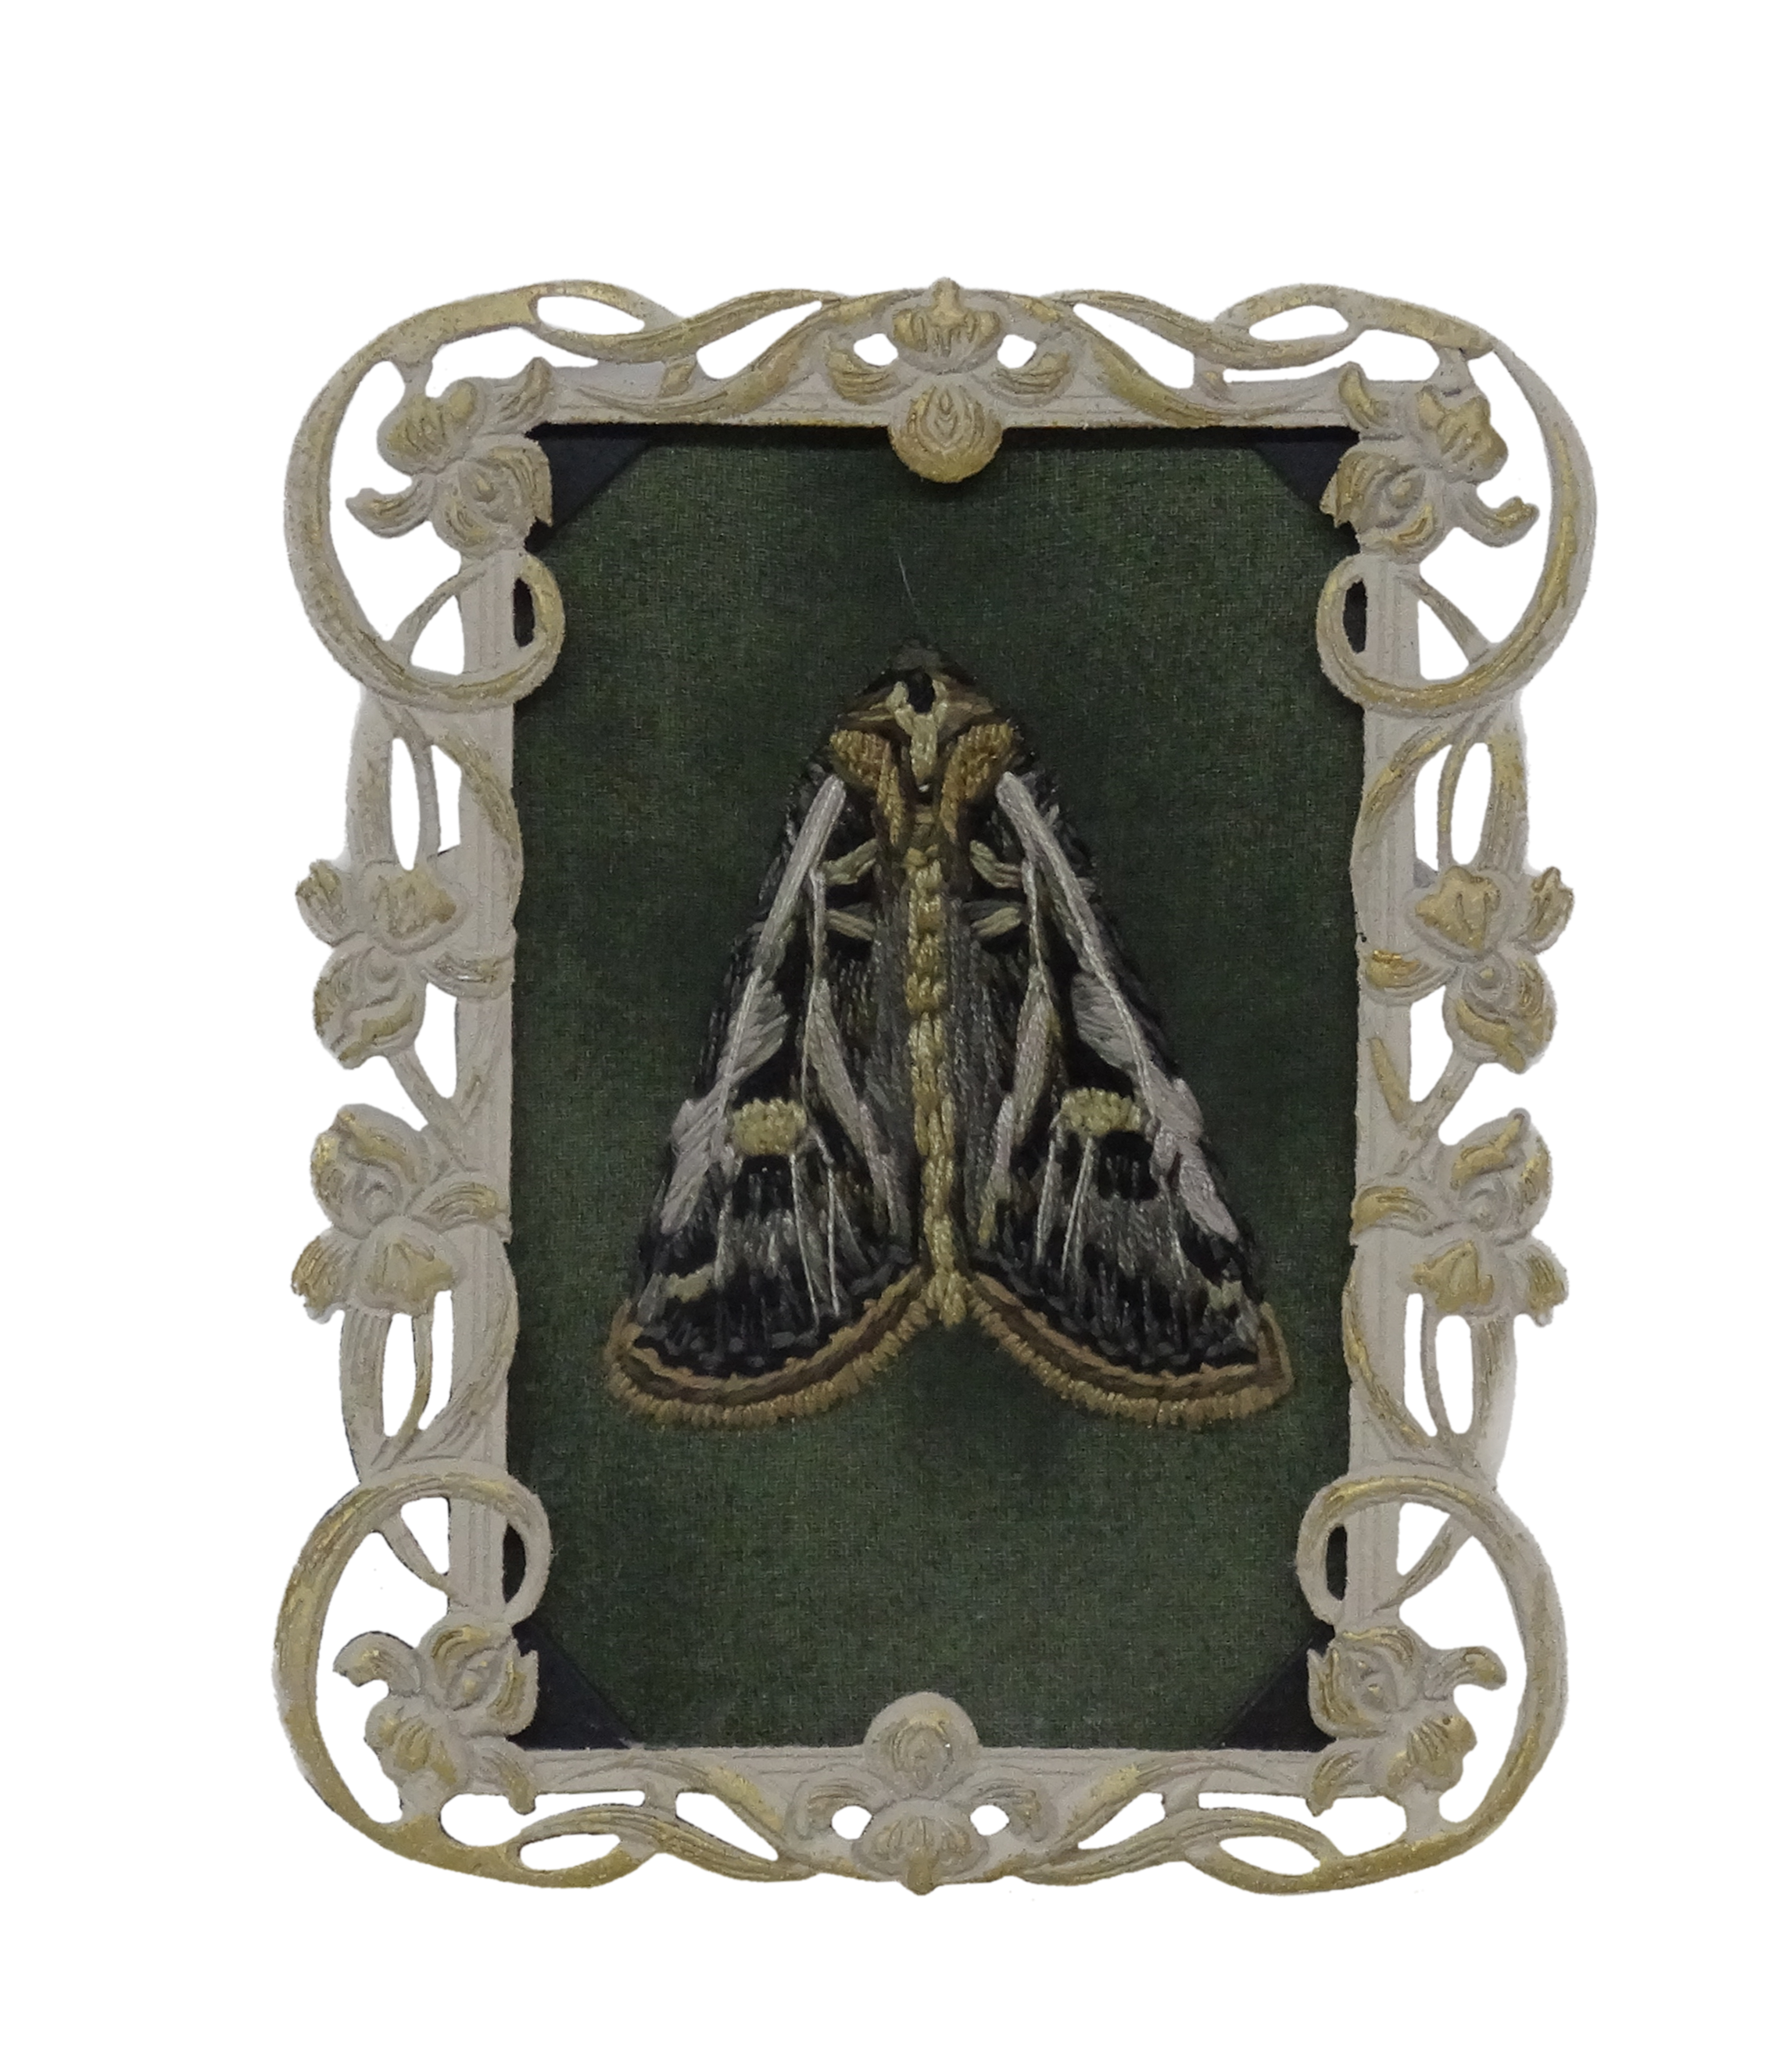 Dingy Cutworm Moth (Feltia jaculifera)